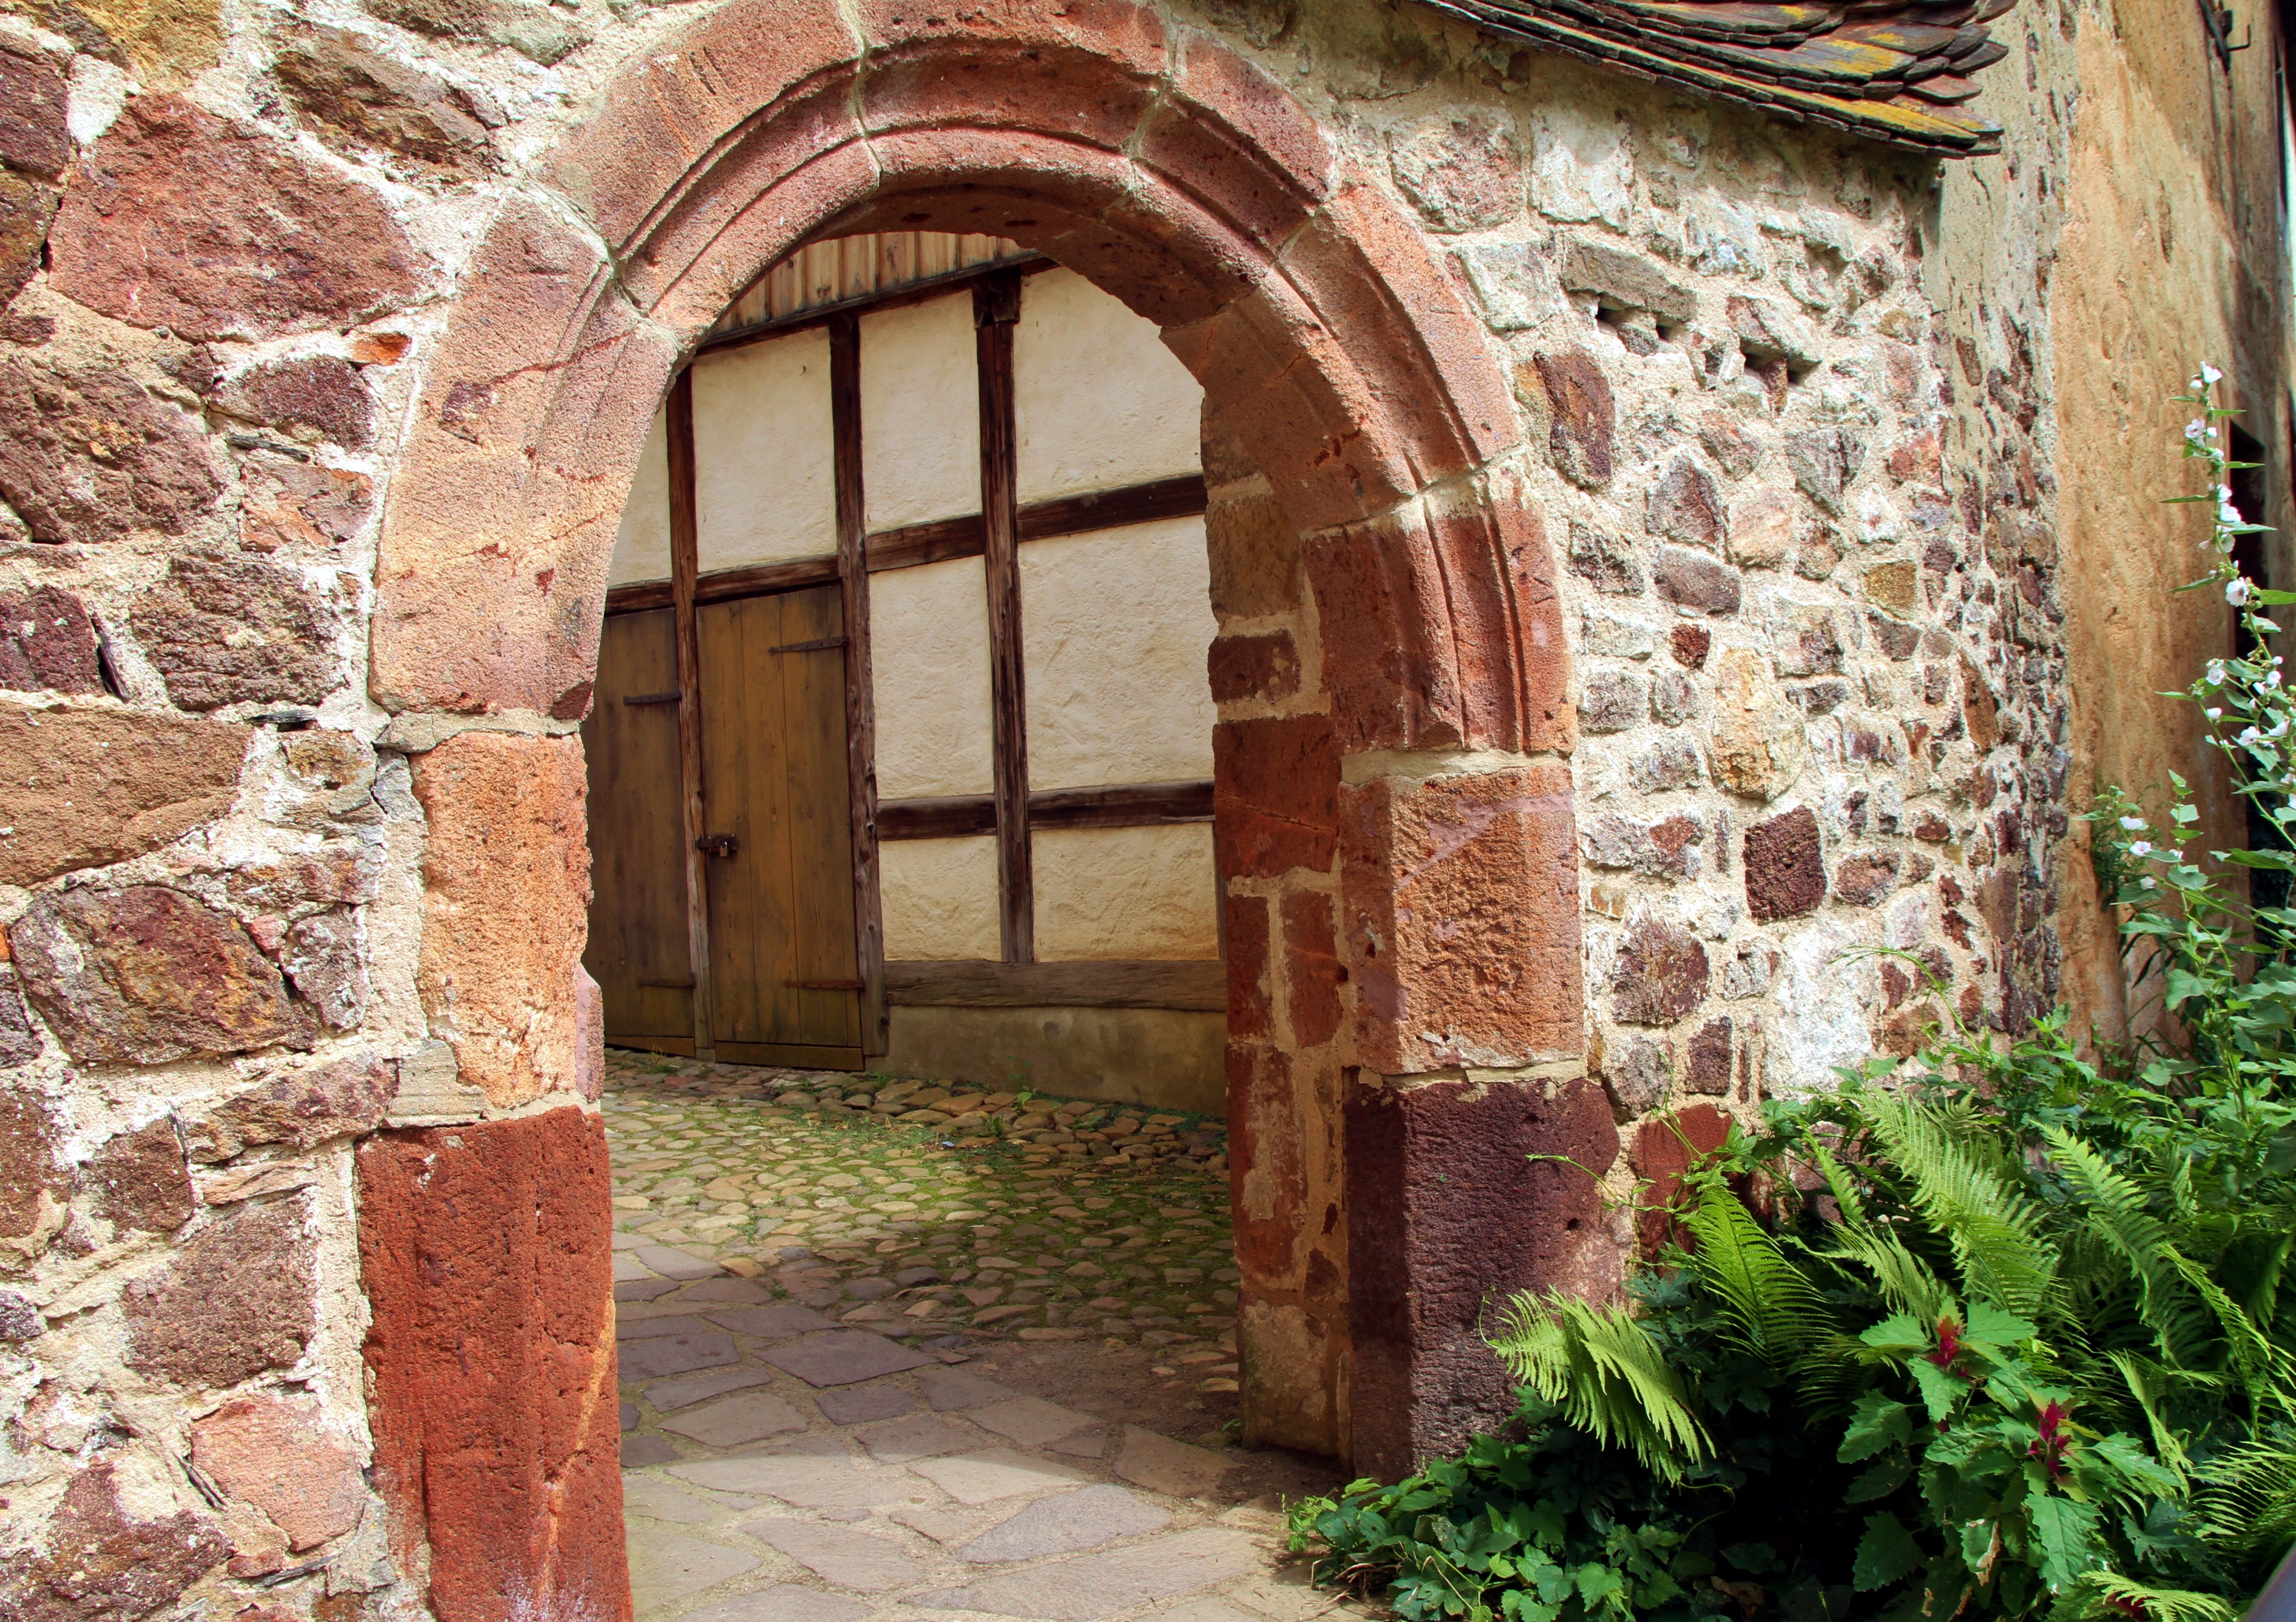 Tor in einer Bruchsteinmauer aus Rochlitzer Porphyr.